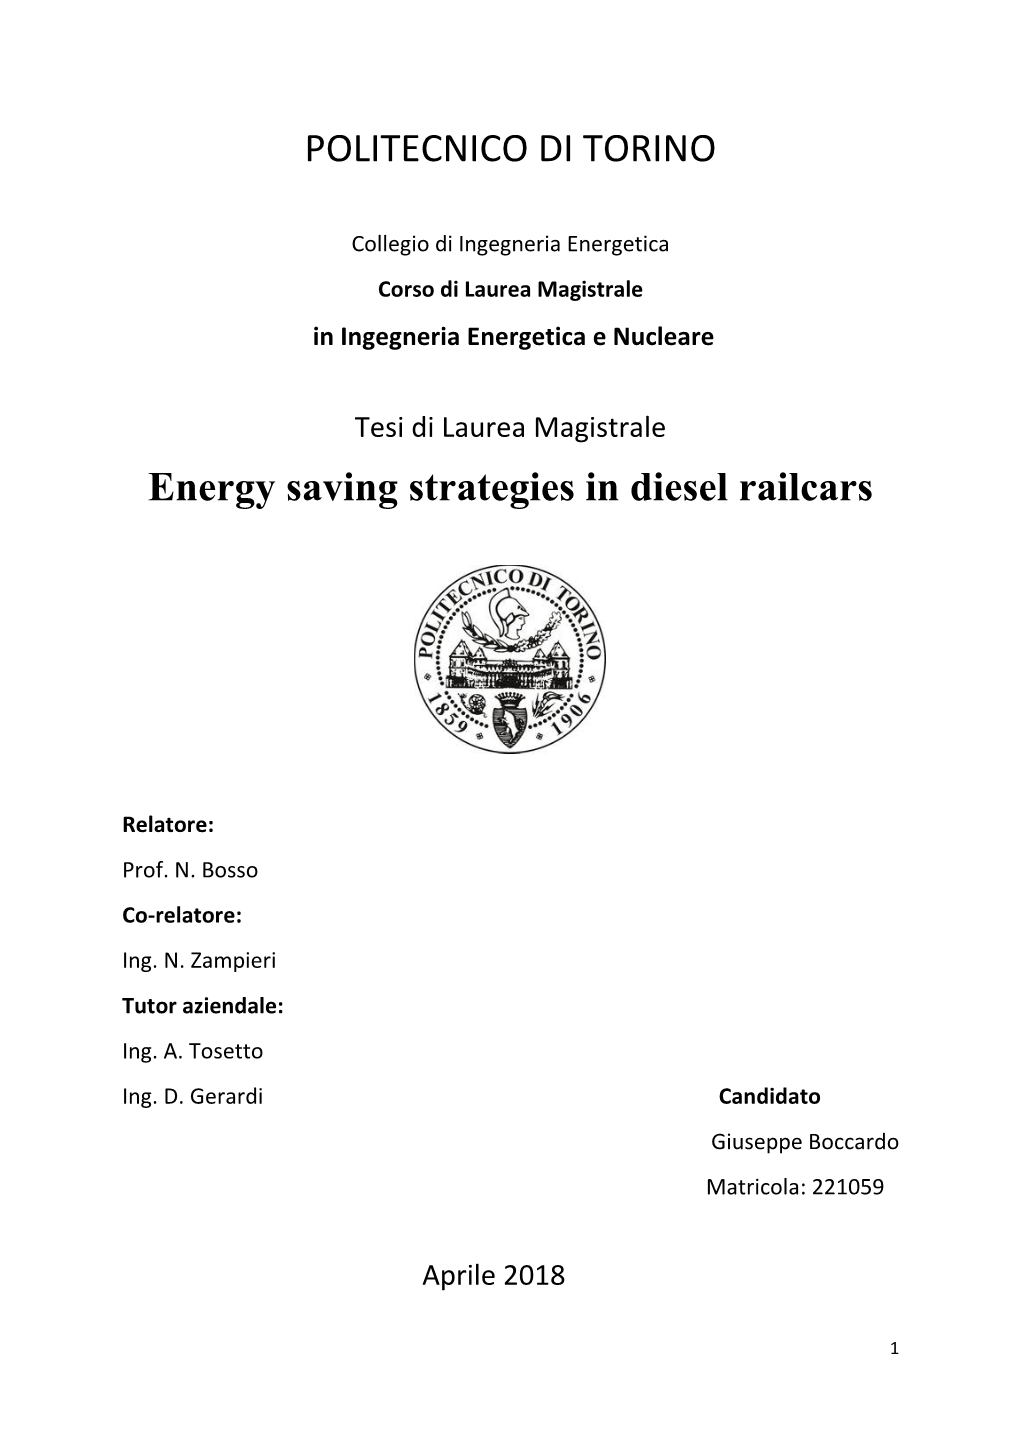 Energy Saving Strategies in Diesel Railcars